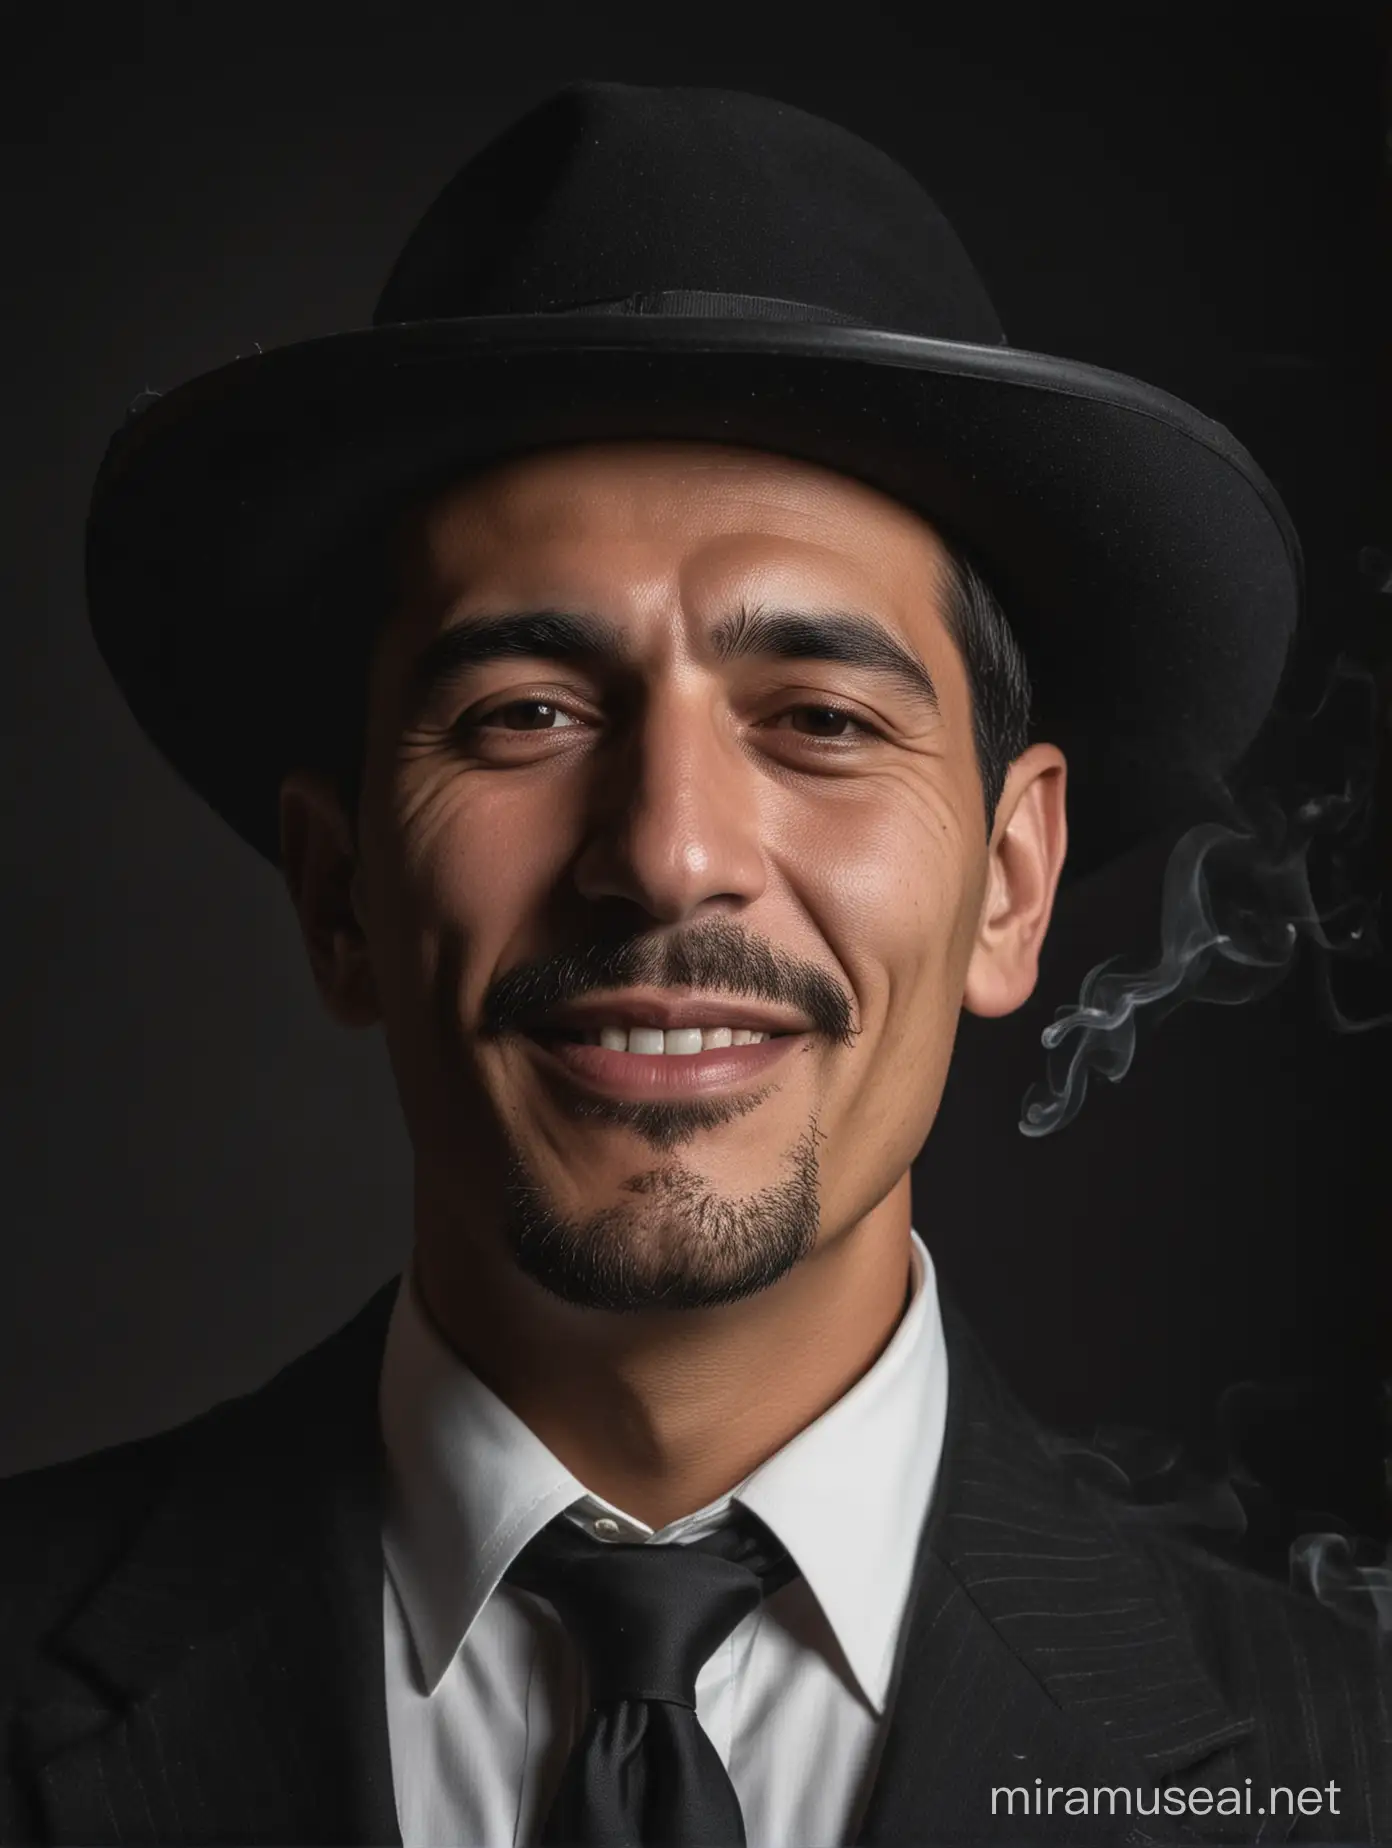 Mexican Mafia Boss with Cigarette in Noir Portrait